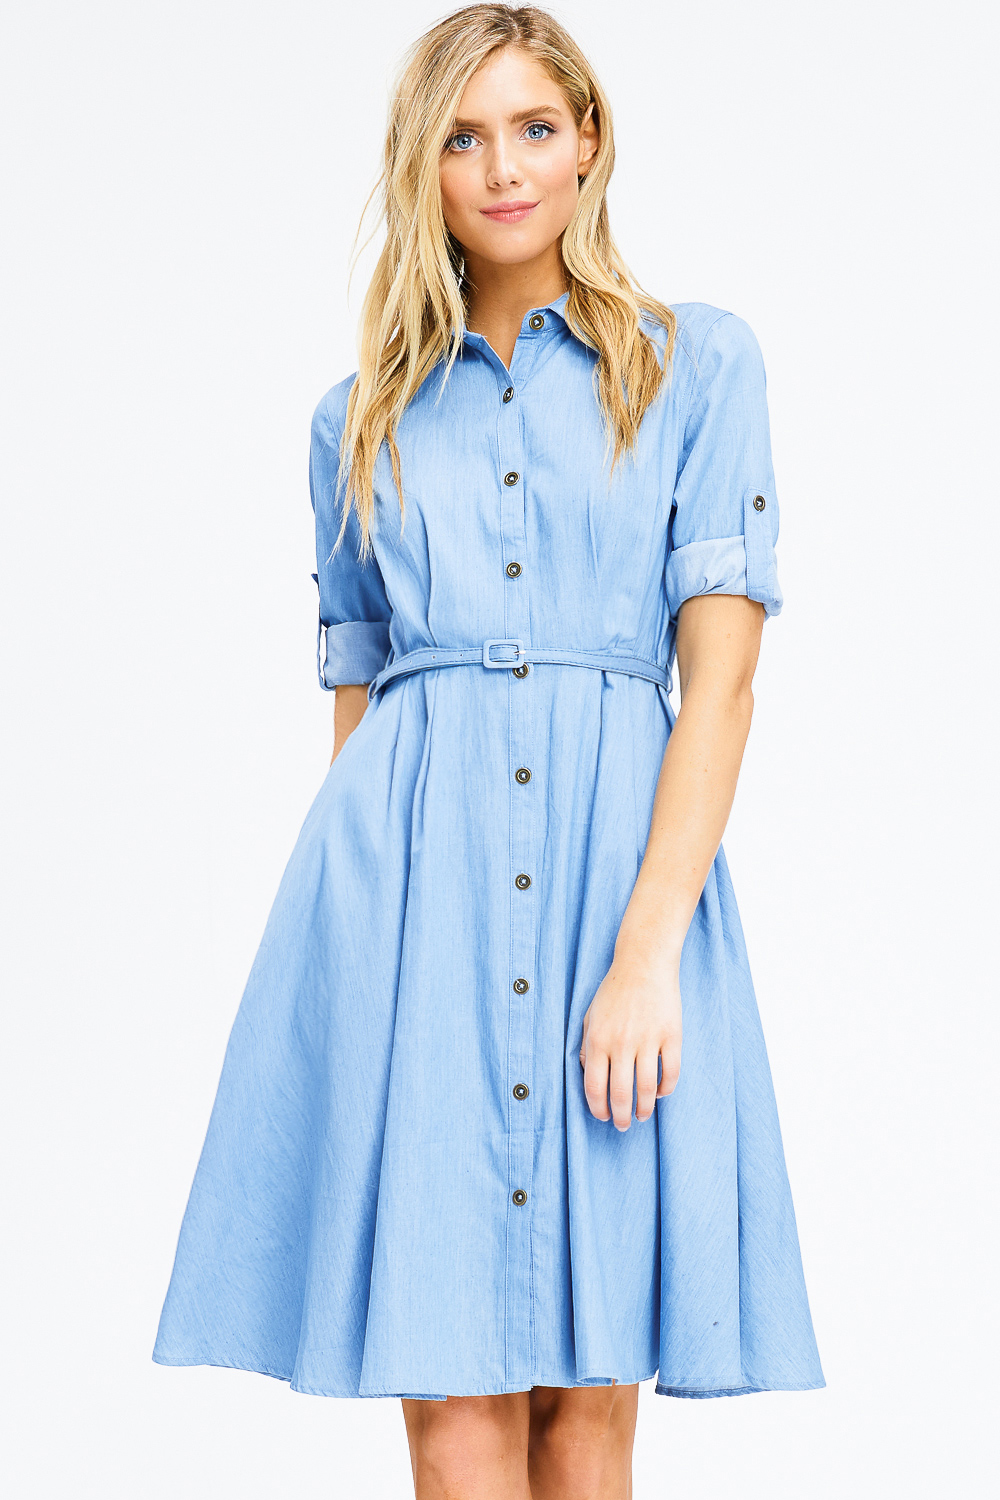 light blue button dress